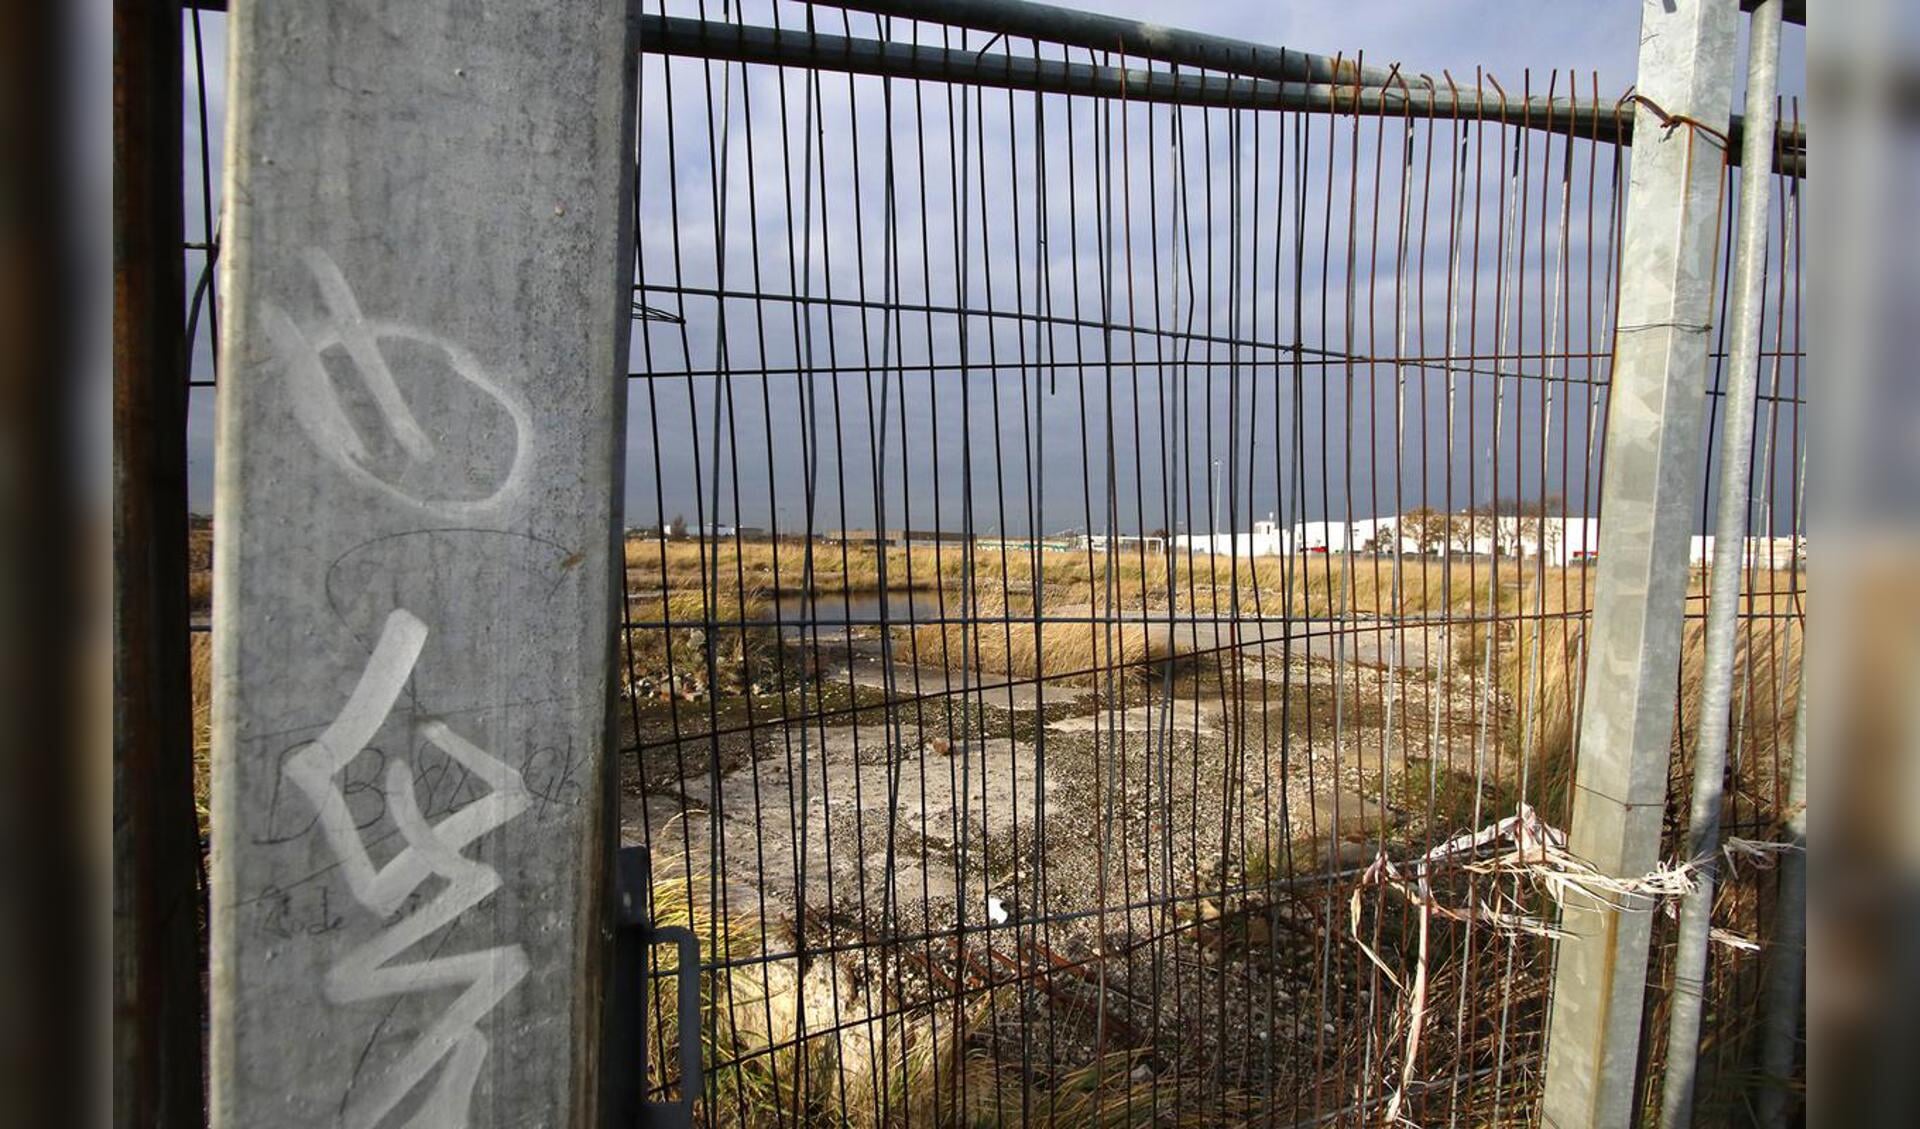 Het terrein van de voormalige suikerfabriek van CSM aan de Markkade. Sinds de sloop in 2009 ligt het terrein braak.